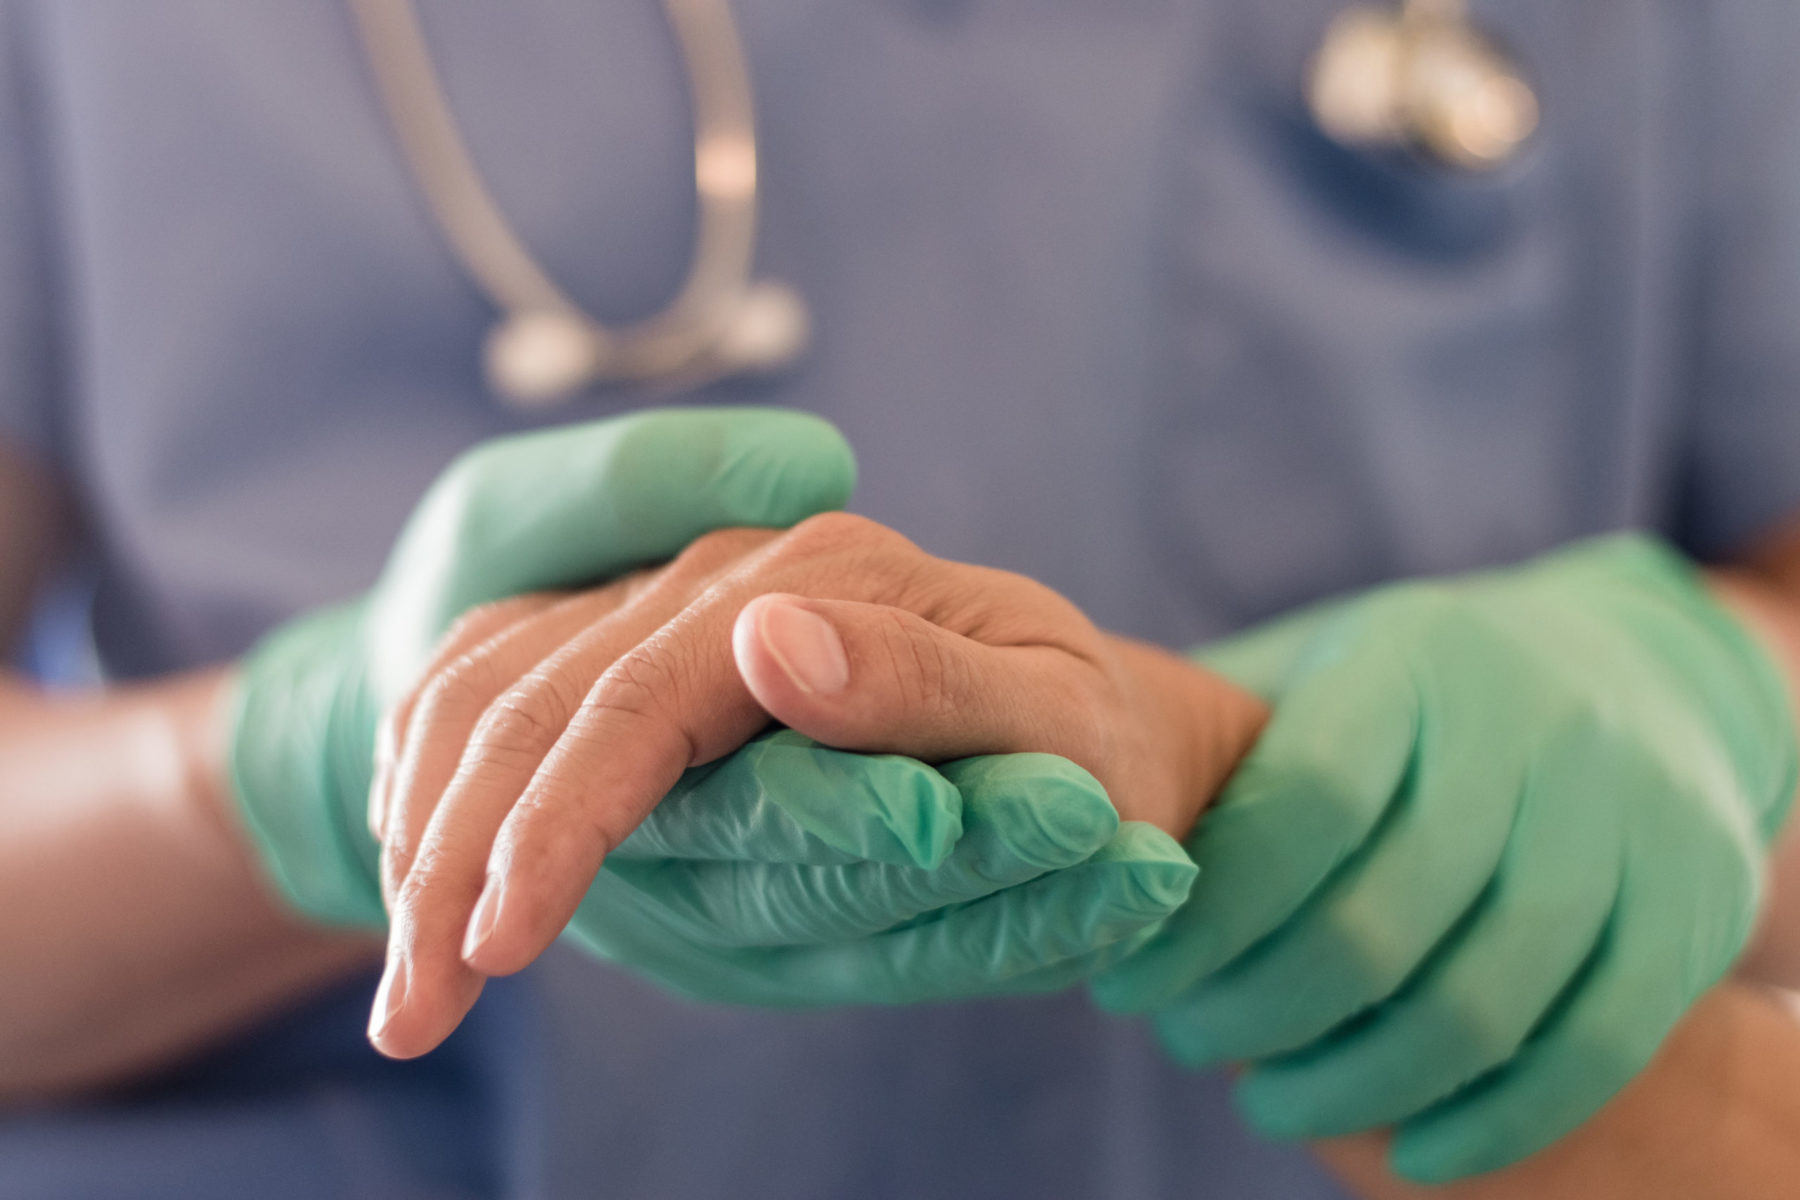 Les mains d'un soignant, gantés de latex vert, tiennent la main d'un patient